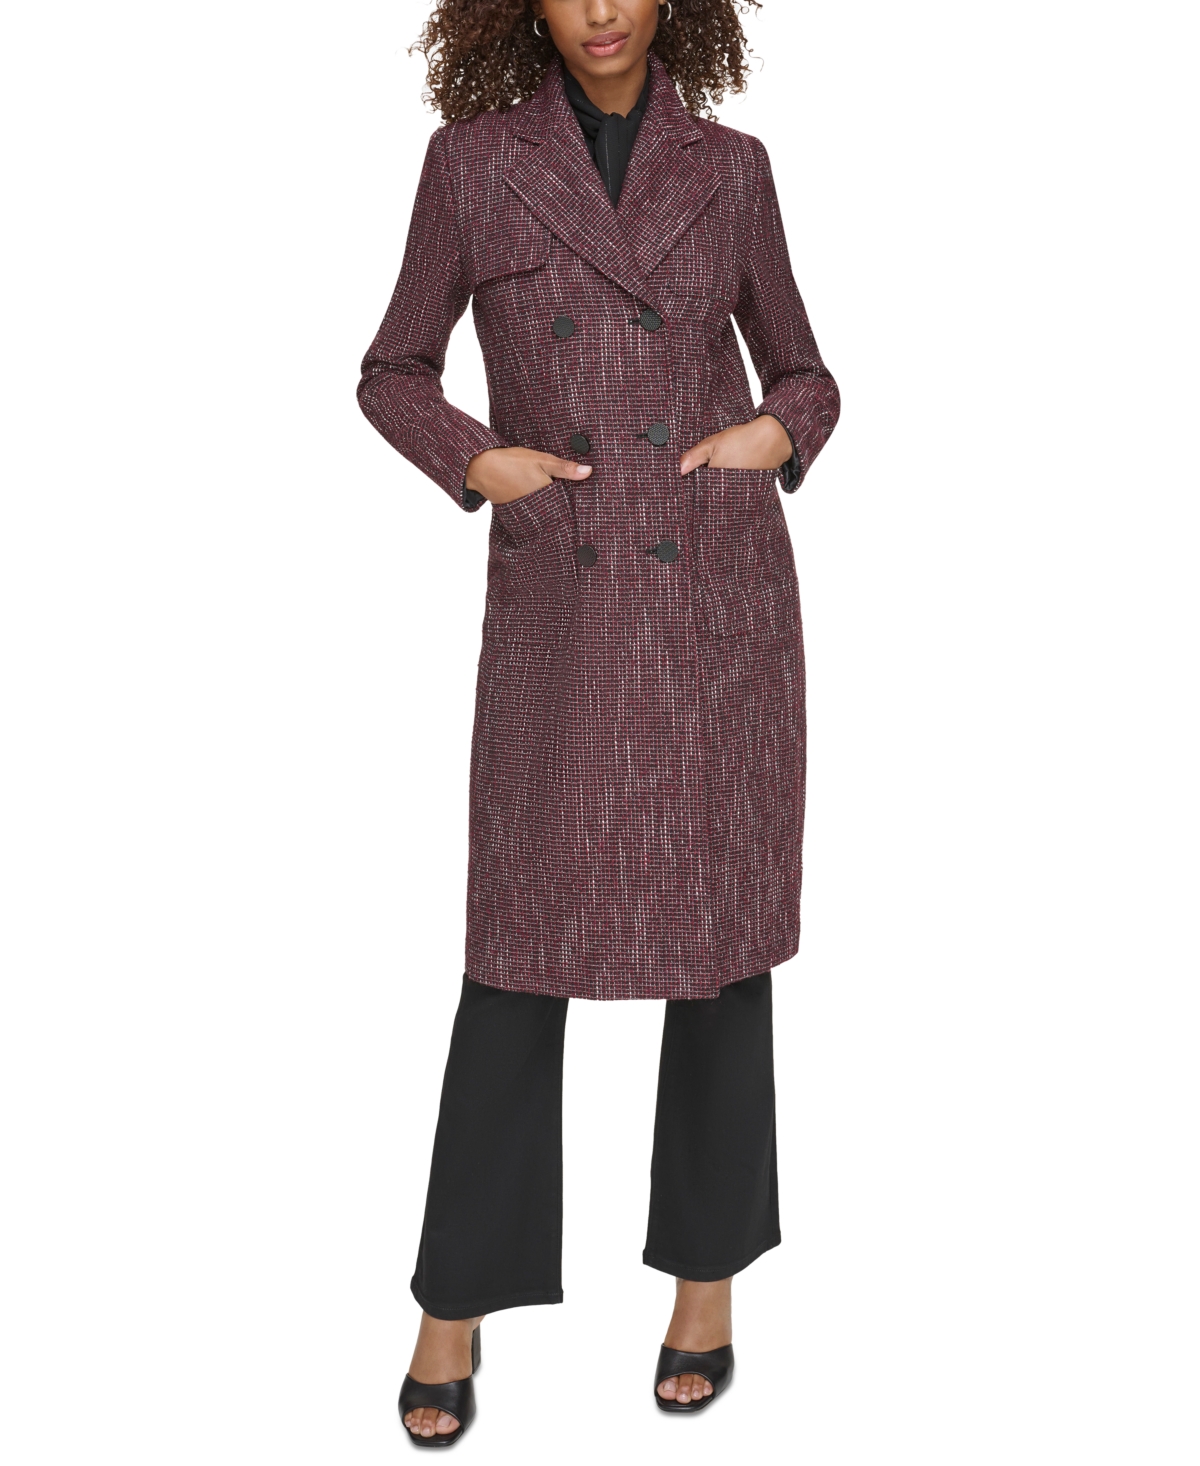 Karl Lagerfeld Women's Tweed Long Topper Jacket In Port Wine Multi